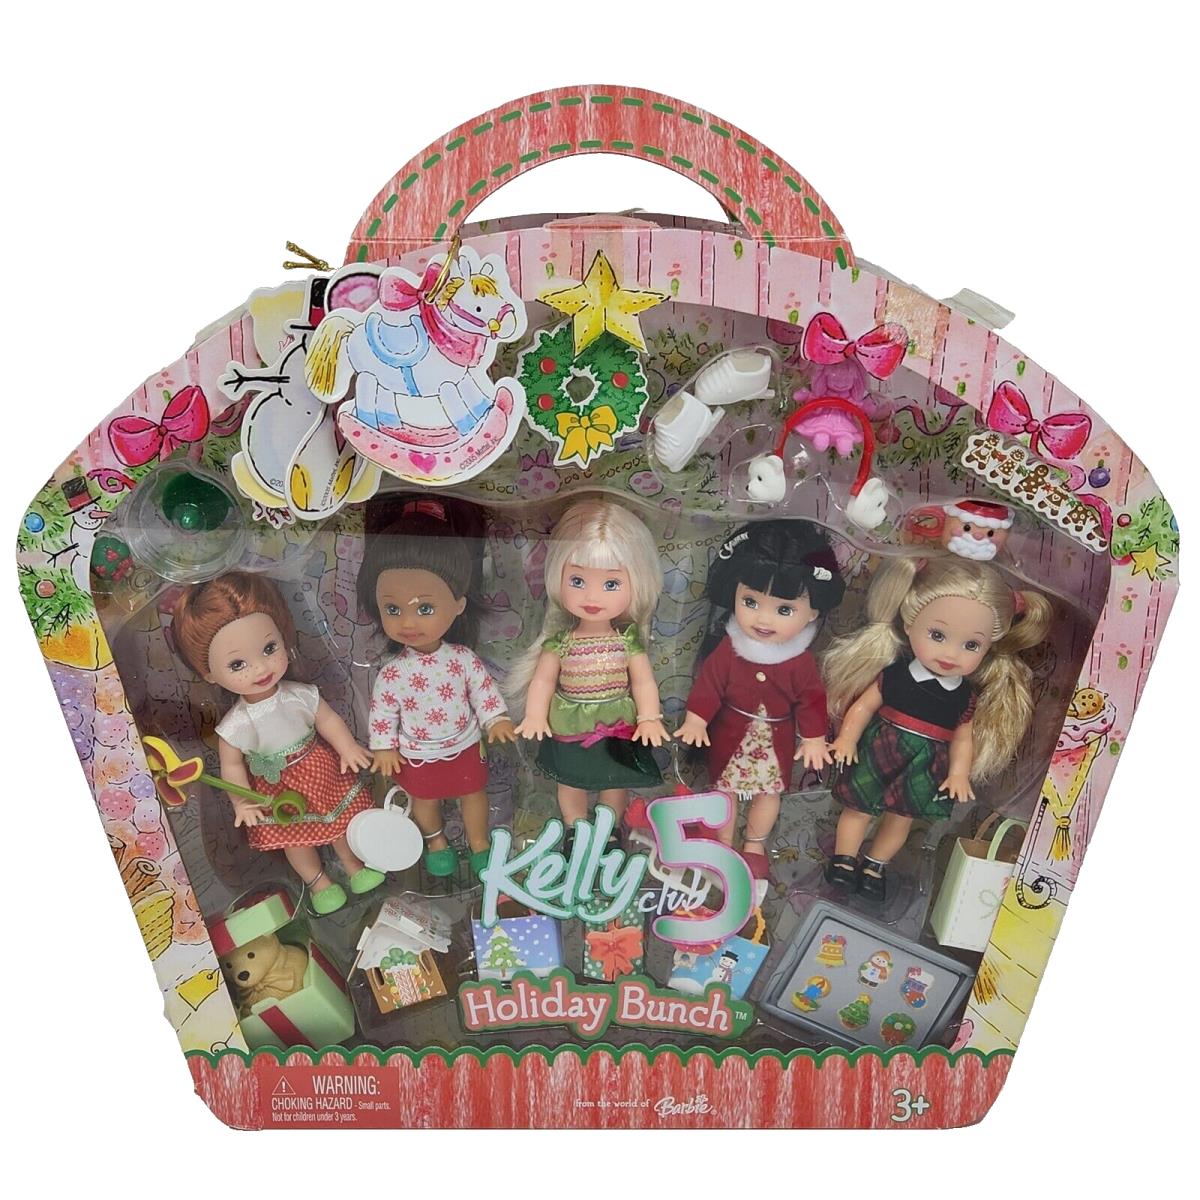 2005 Kelly Club 5 Holiday Bunch 5 Dolls Mattel Barbie Nrfb Gift Set